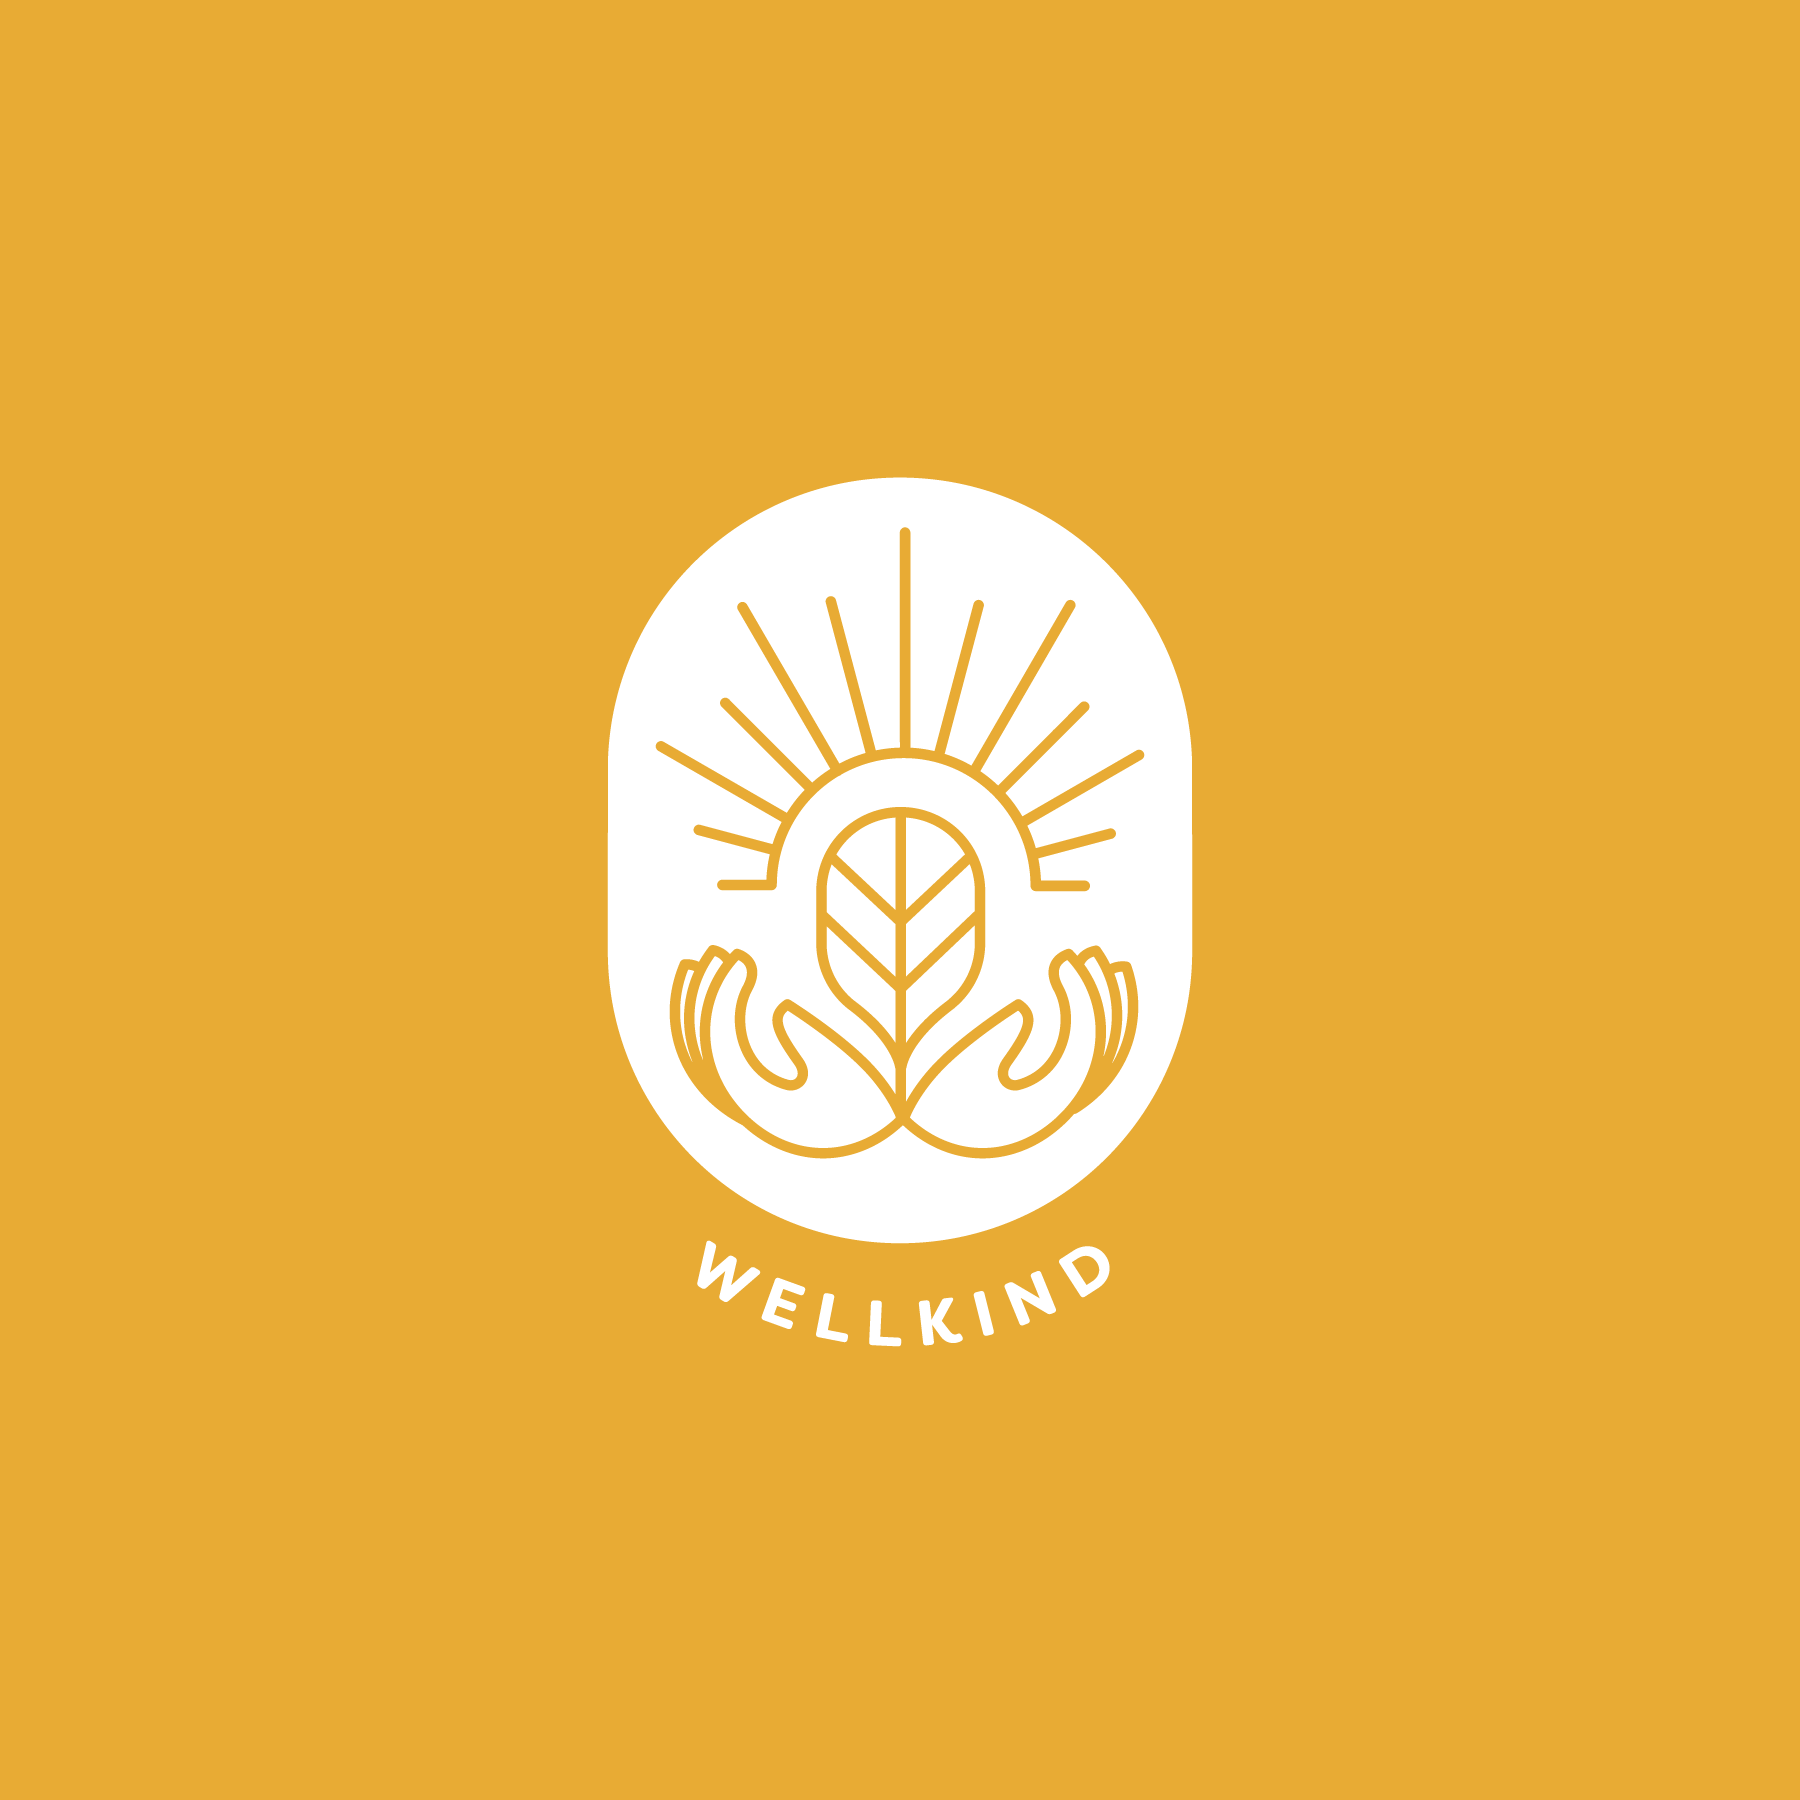 GT_wellkind_logo.png